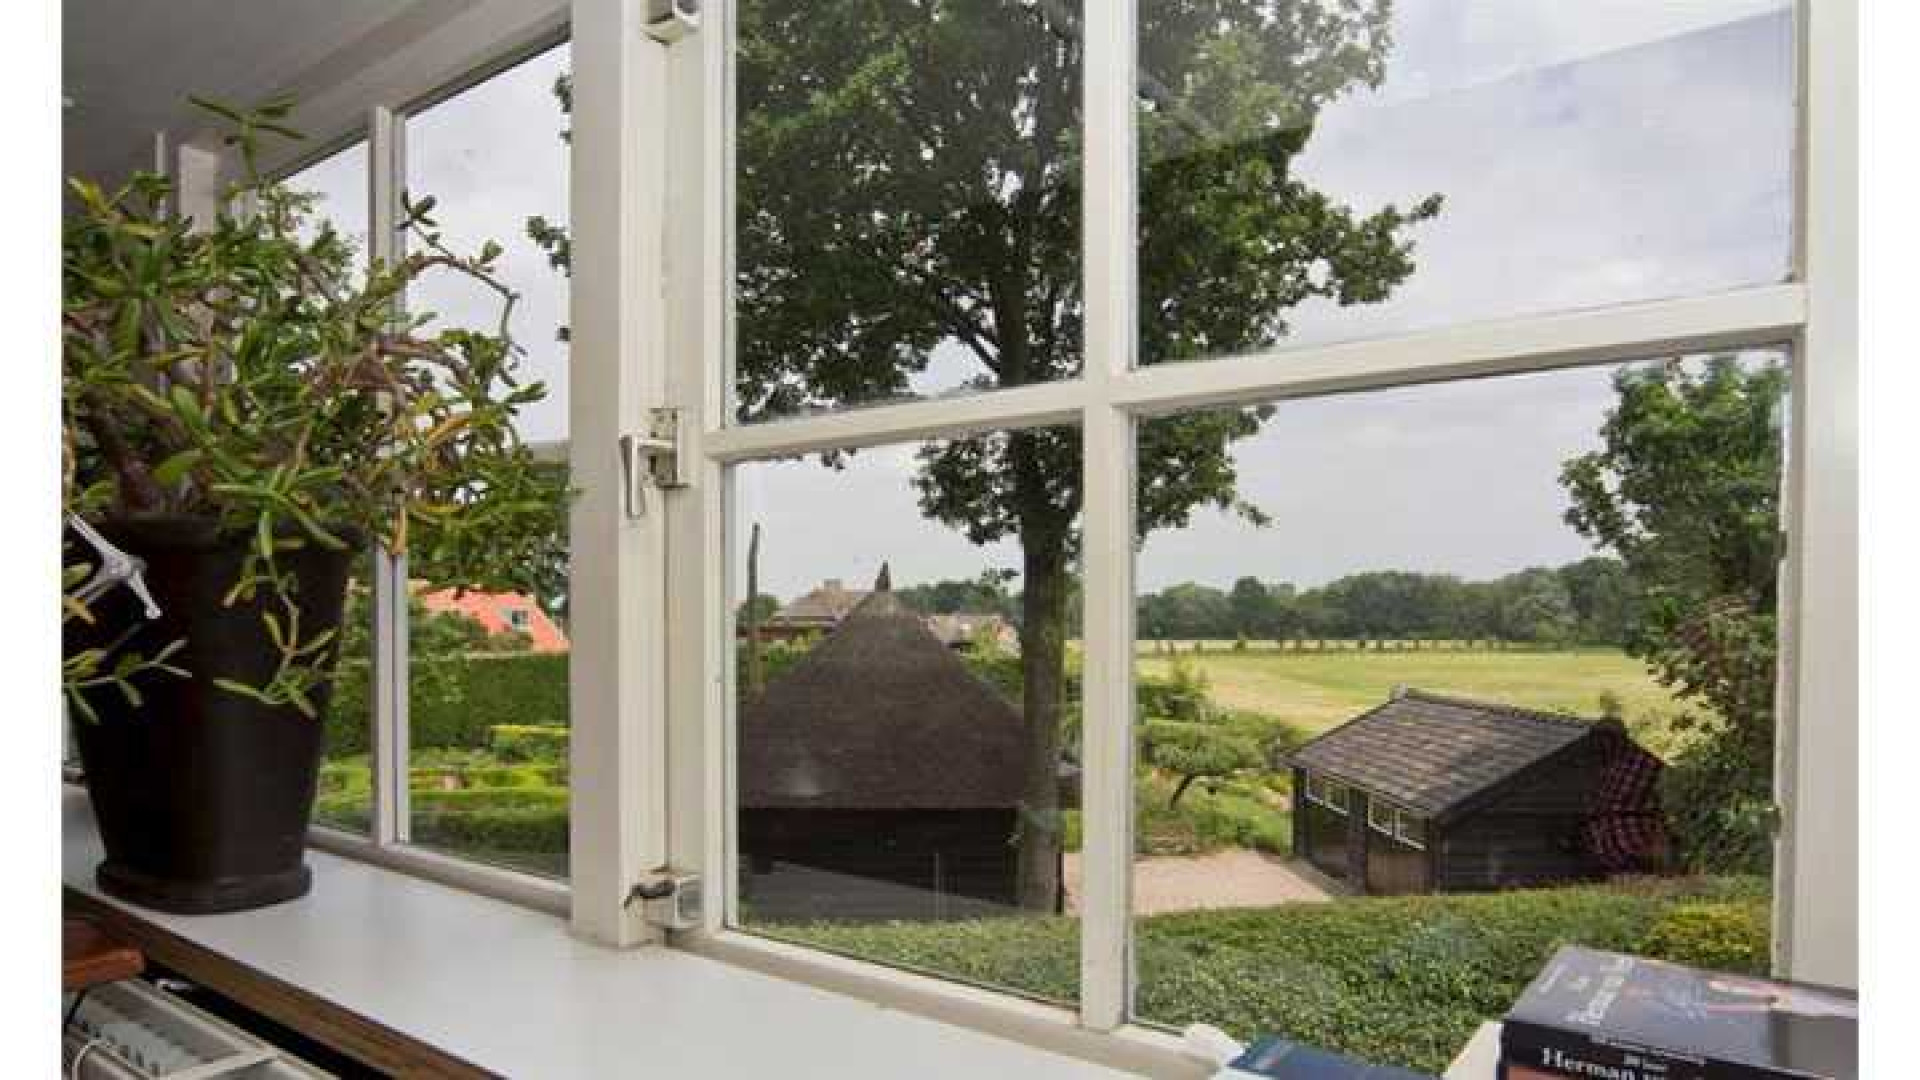 Herman van Veen haalt na eerdere prijsverlaging zijn huis uit de verkoop. Zie foto's 12